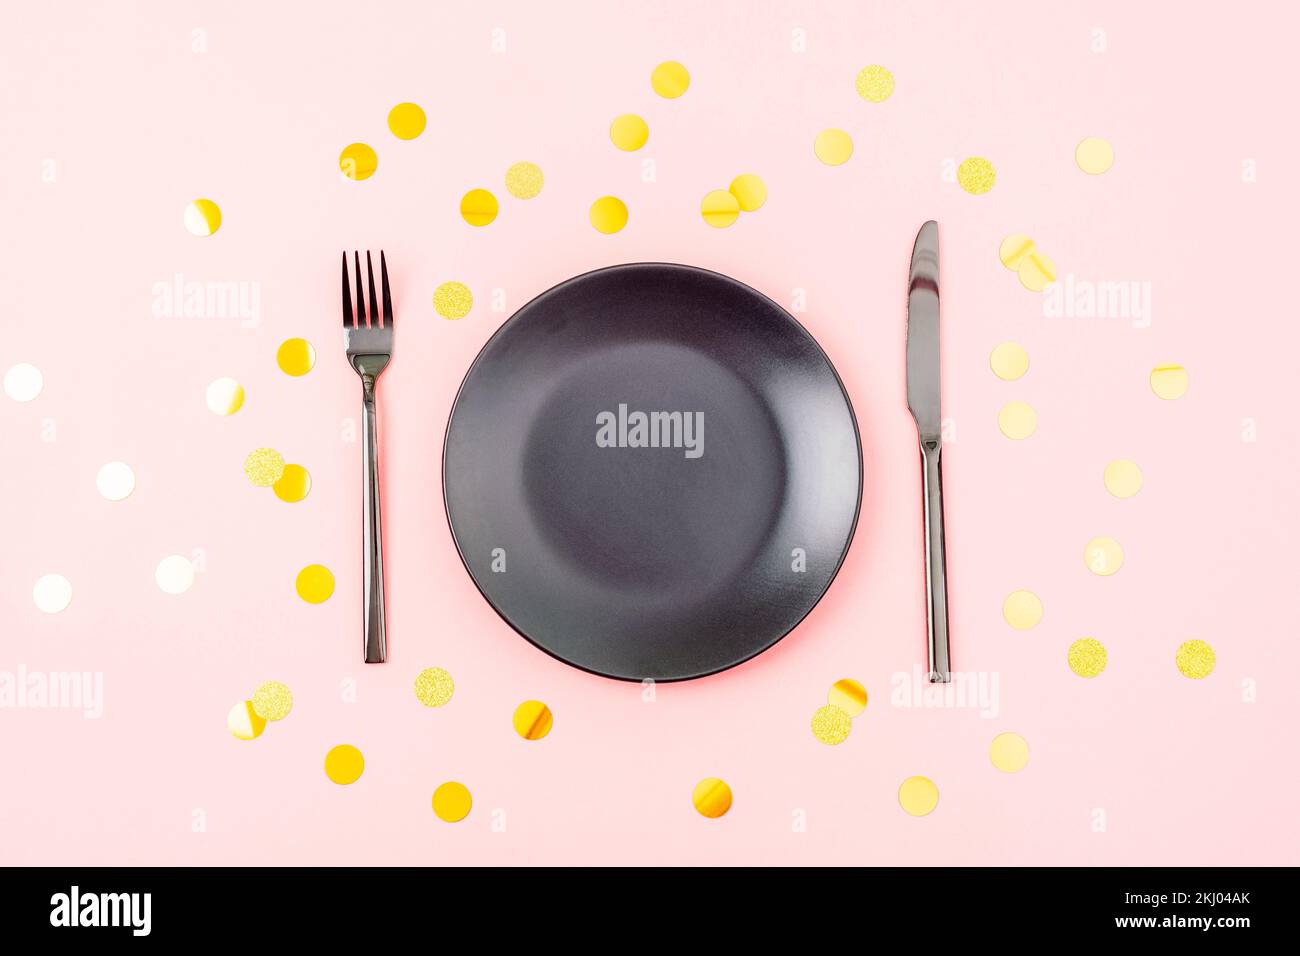 Table élégante avec assiette noire, couverts sur fond rose avec confettis dorés. Noël, anniversaire, concept de vacances. Vue de dessus, plan d'agencement. Banque D'Images